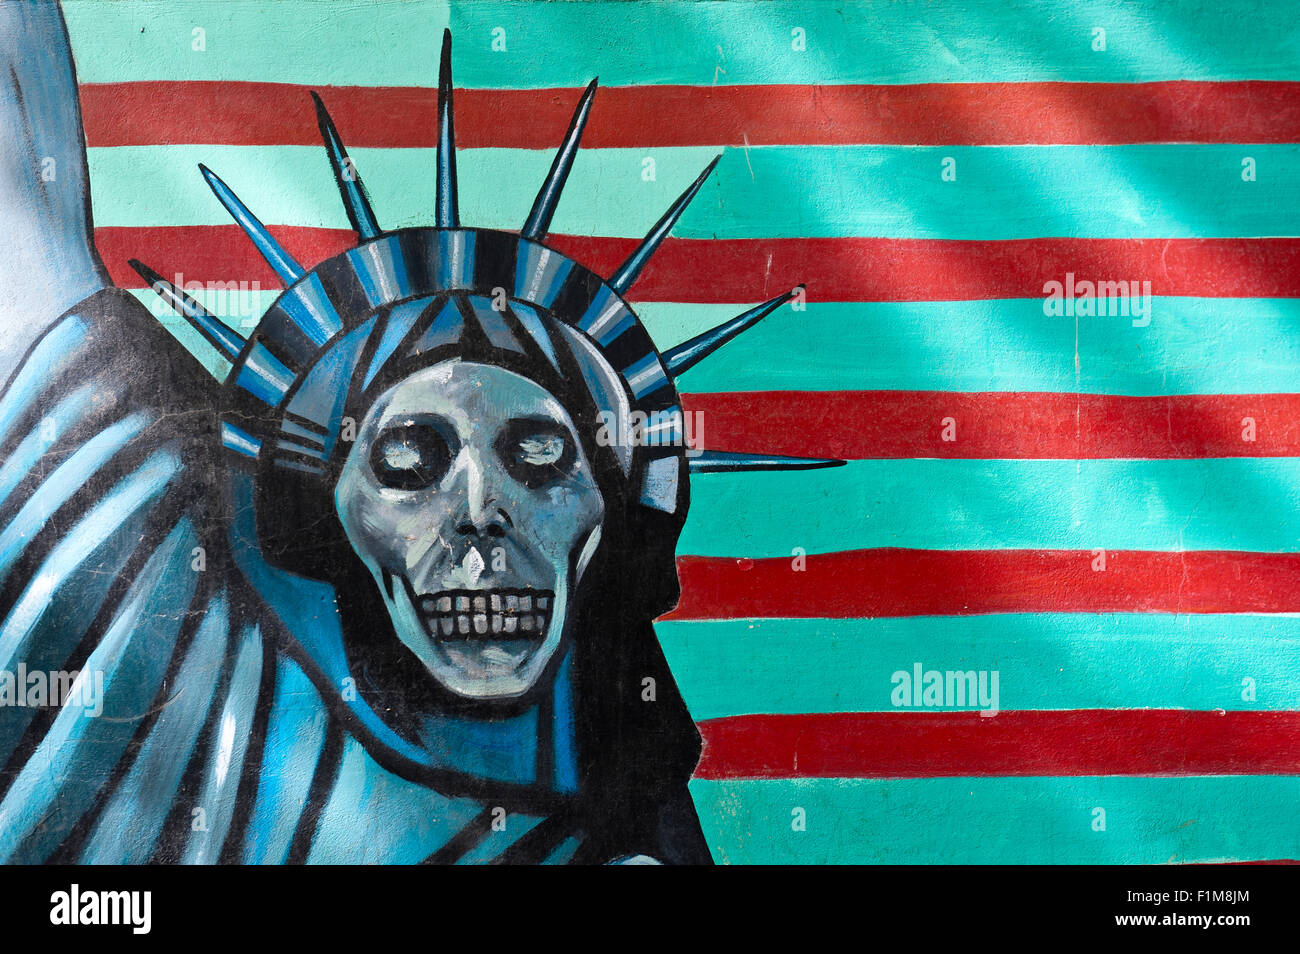 Graffiti an der Wand, symbol, Statue of Liberty mit einem Totenkopf, ehem. Botschaft der Vereinigten Staaten von Amerika in Teheran, Iran Stockfoto